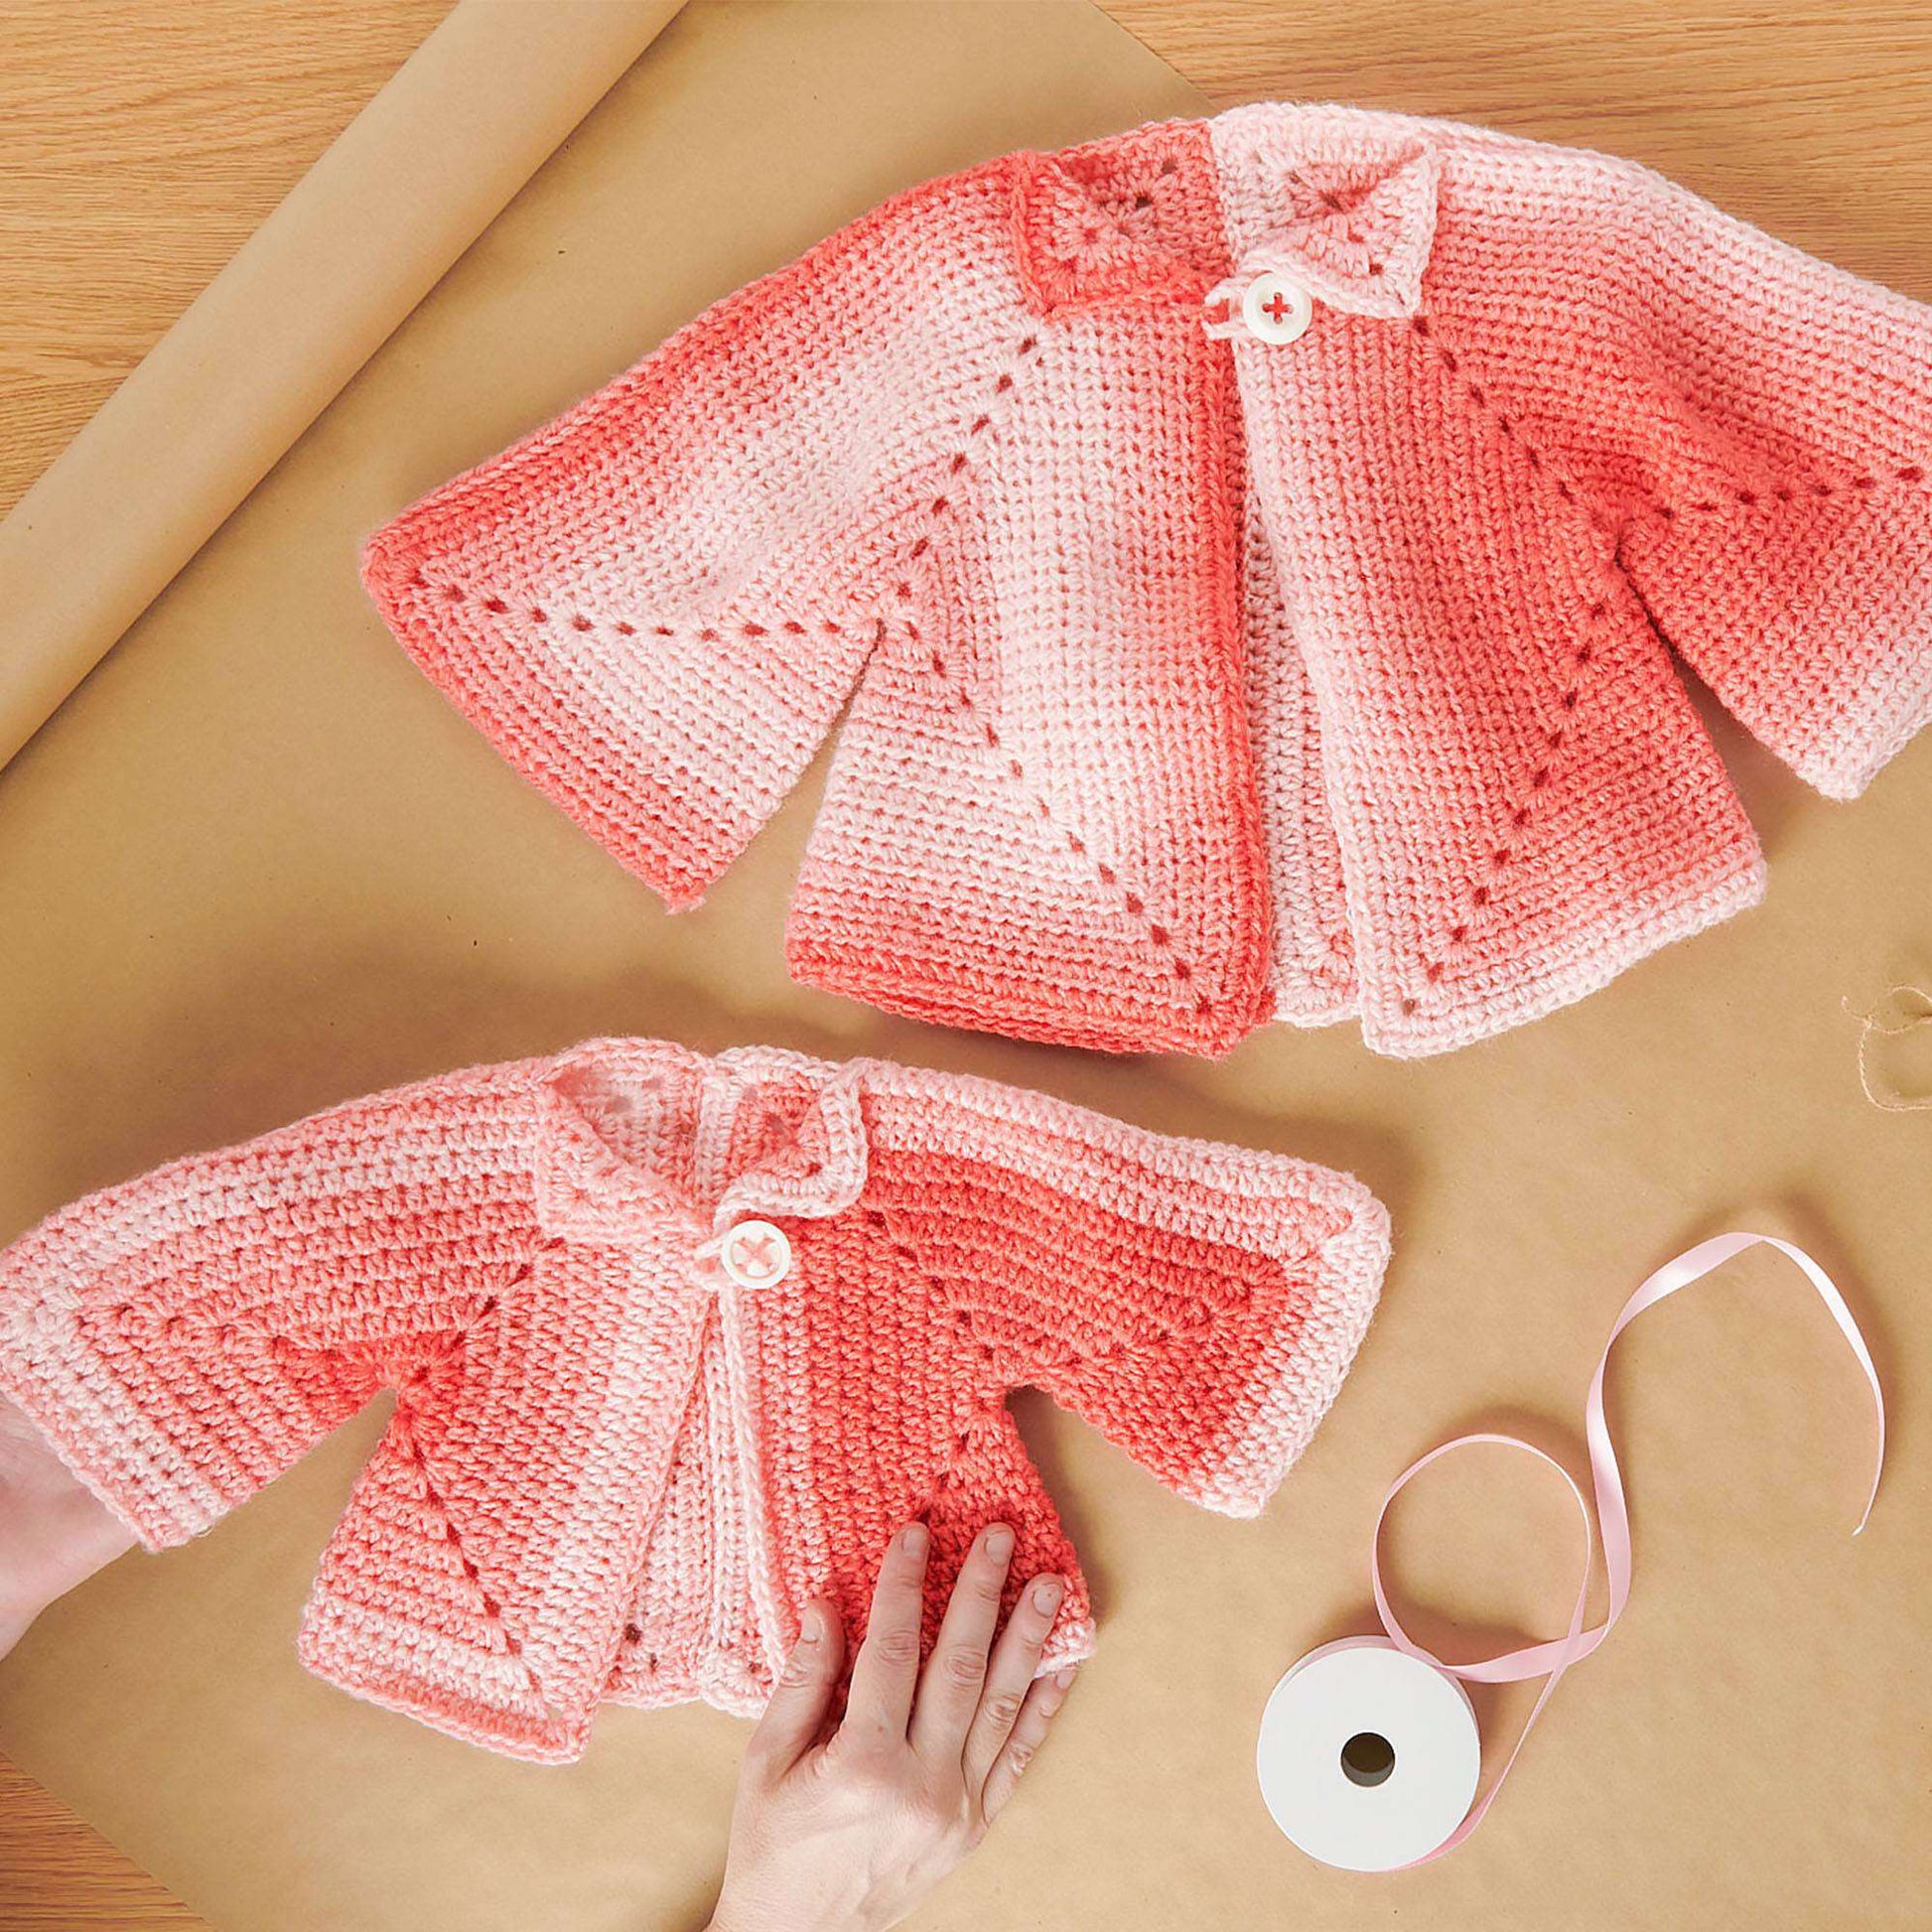 Free Red Heart Smart Baby Crochet Jacket Pattern